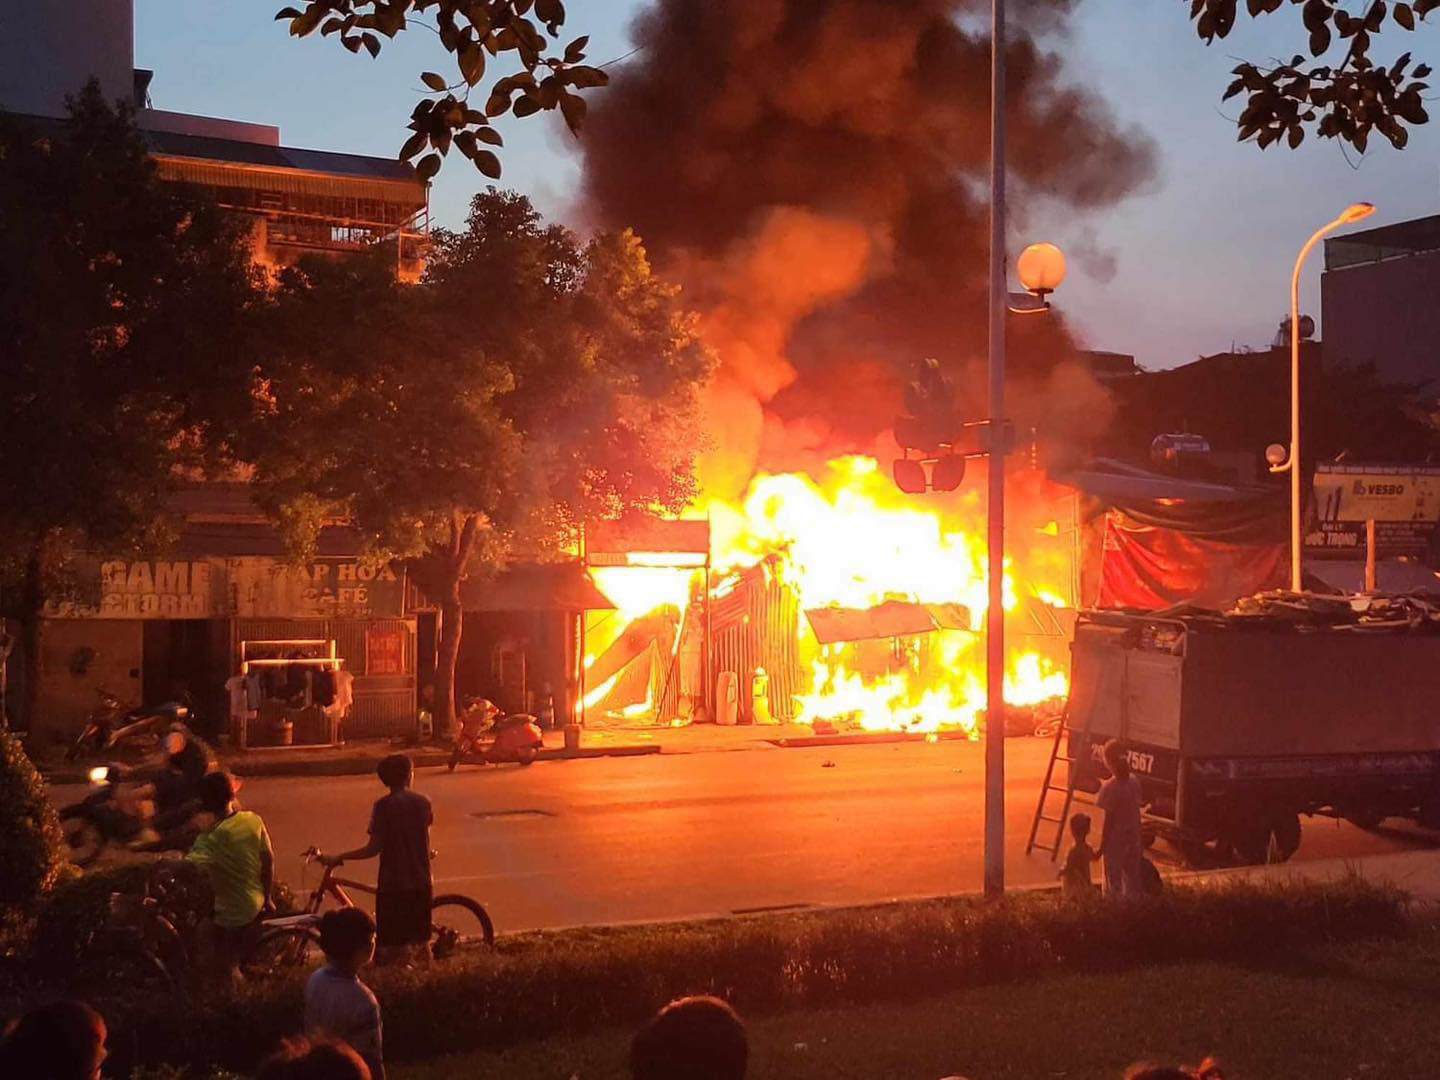 “Có một tiếng nổ phát ra, ngôi nhà sập xuống luôn. Vụ cháy khiến 3 mẹ con tử vong”, lãnh đạo UBND huyện Thanh Trì nói